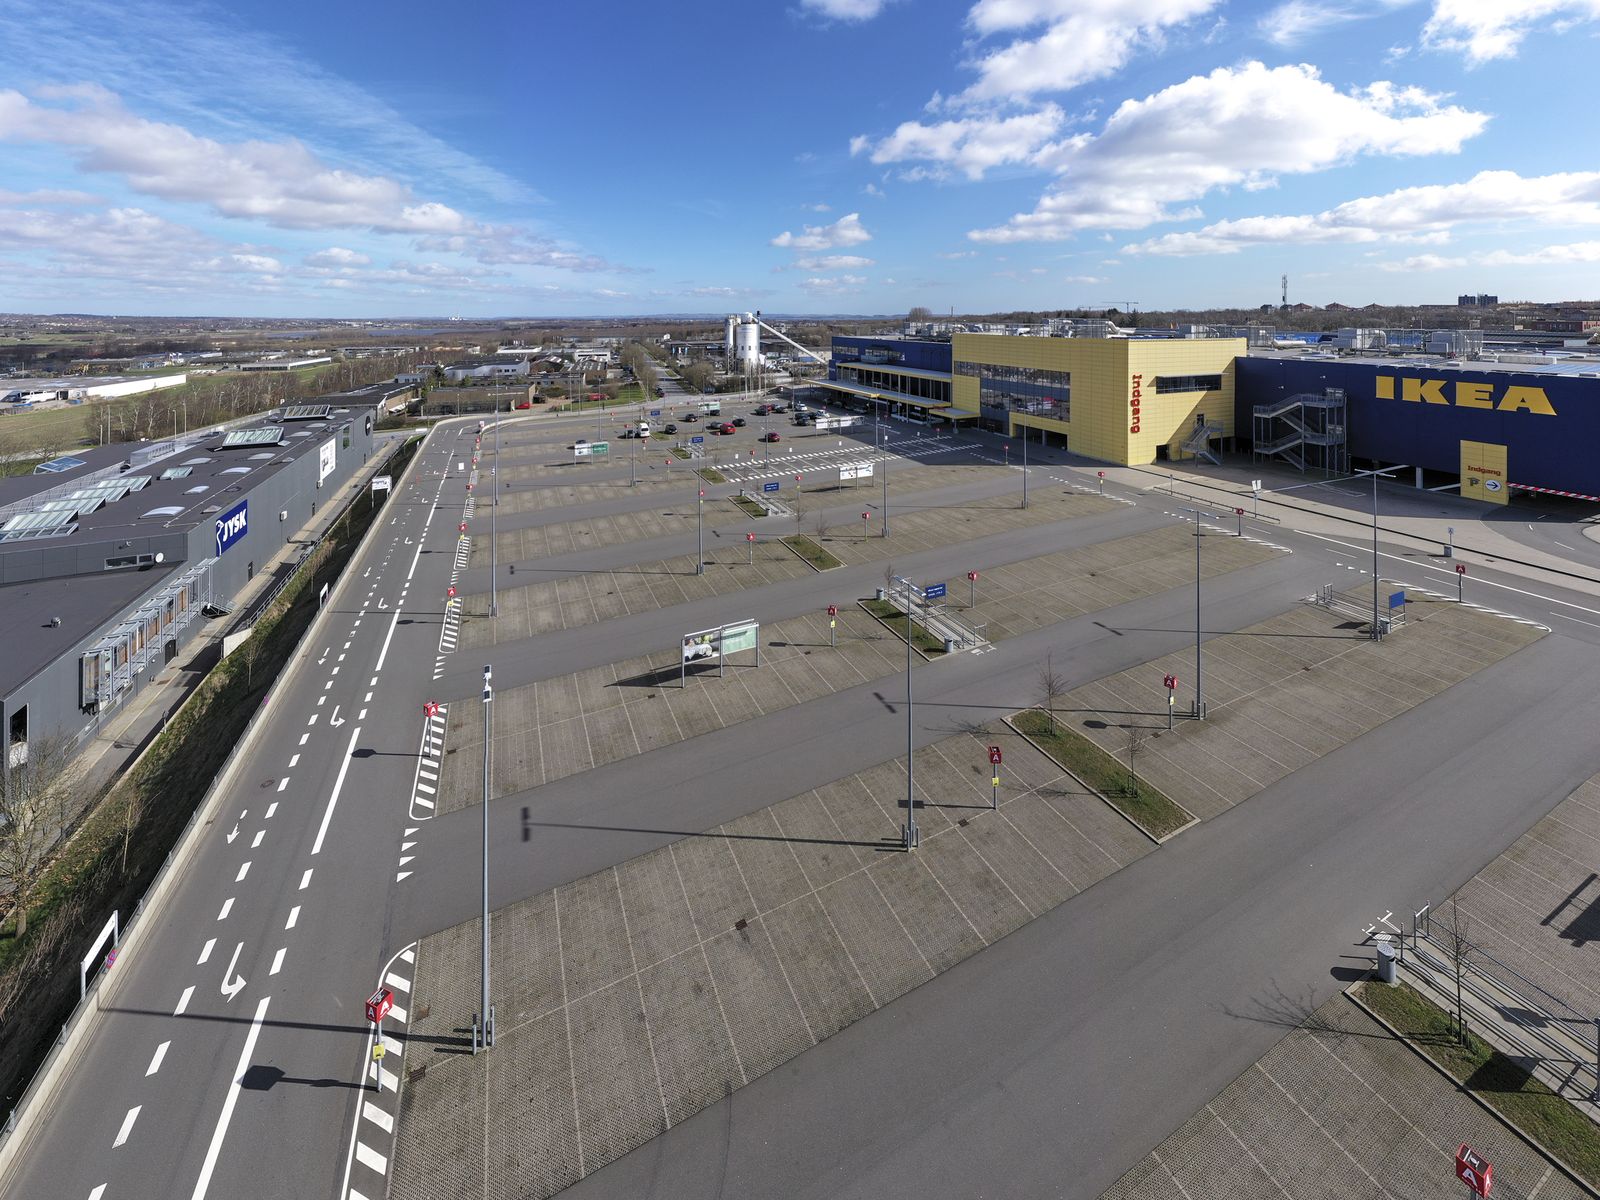 Ikea holder alle varehuse lukket. Parkeringspladsen her foran butikken i Skejby plejer at være propfyldt. Foto: Claus Bonnerup